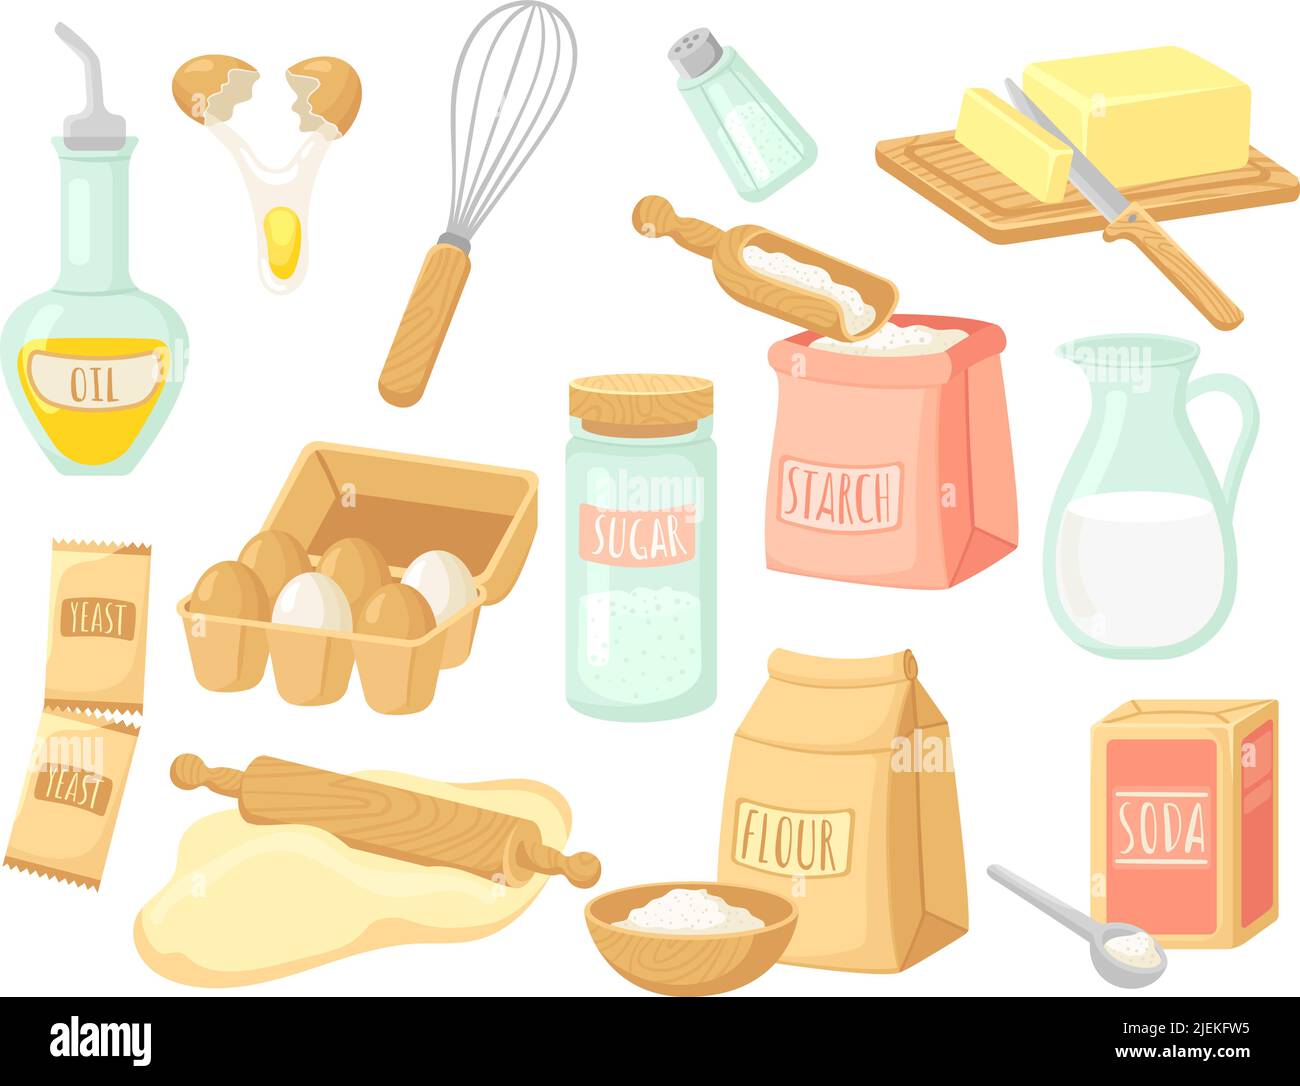 Ingredienti E Utensili Da Cucina E Ciotole Pronti Per La Cottura a Casa  Immagine Stock - Immagine di farina, cucina: 214860639